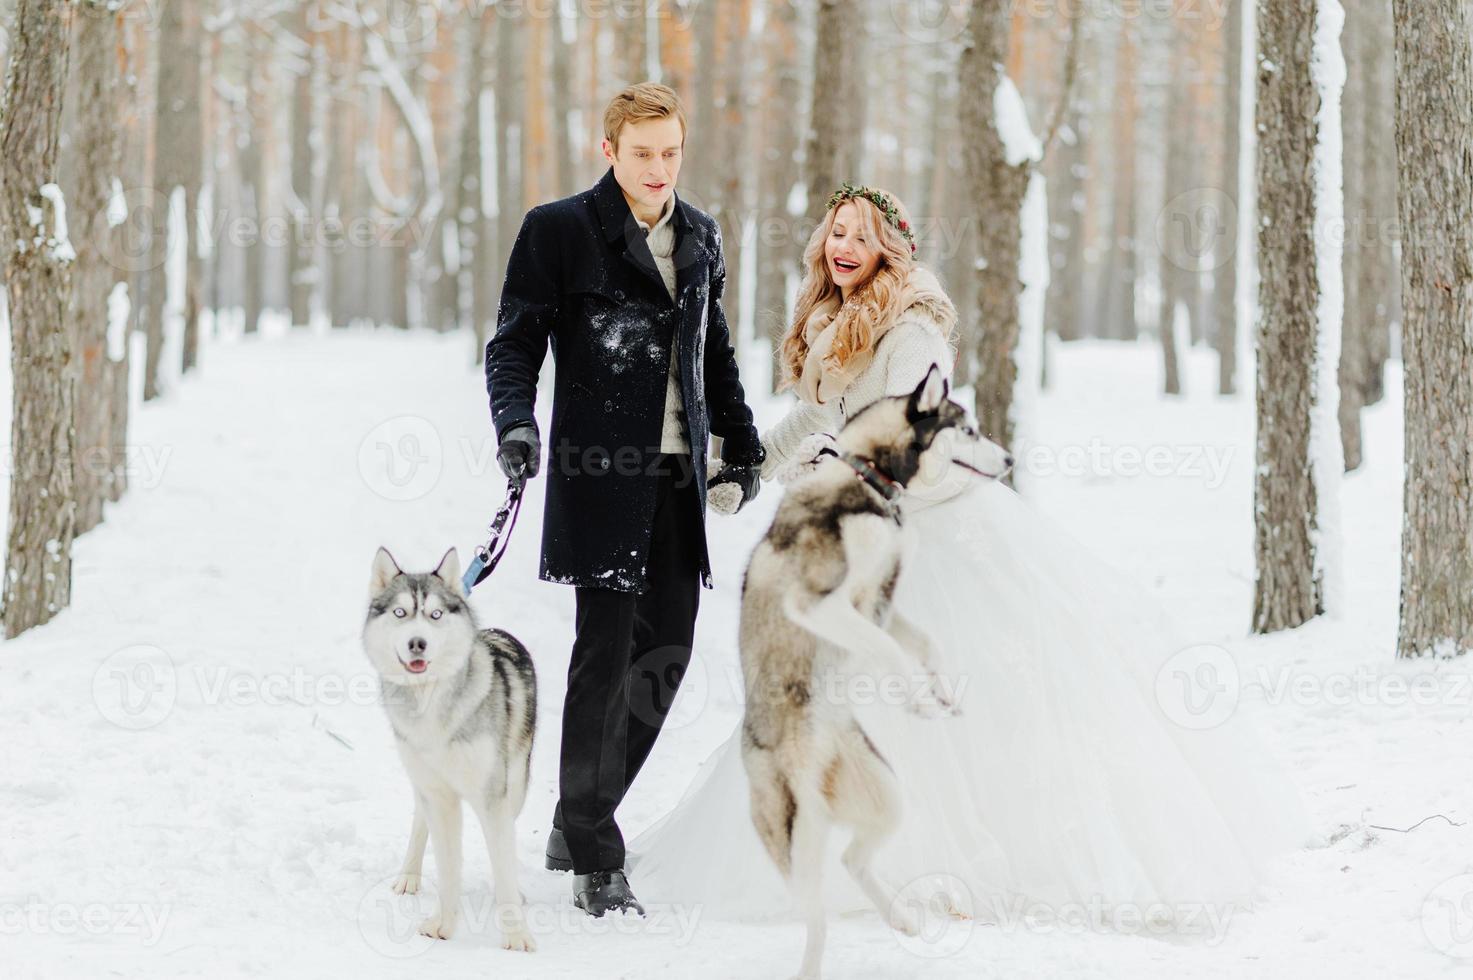 servizio fotografico di matrimonio invernale in natura foto